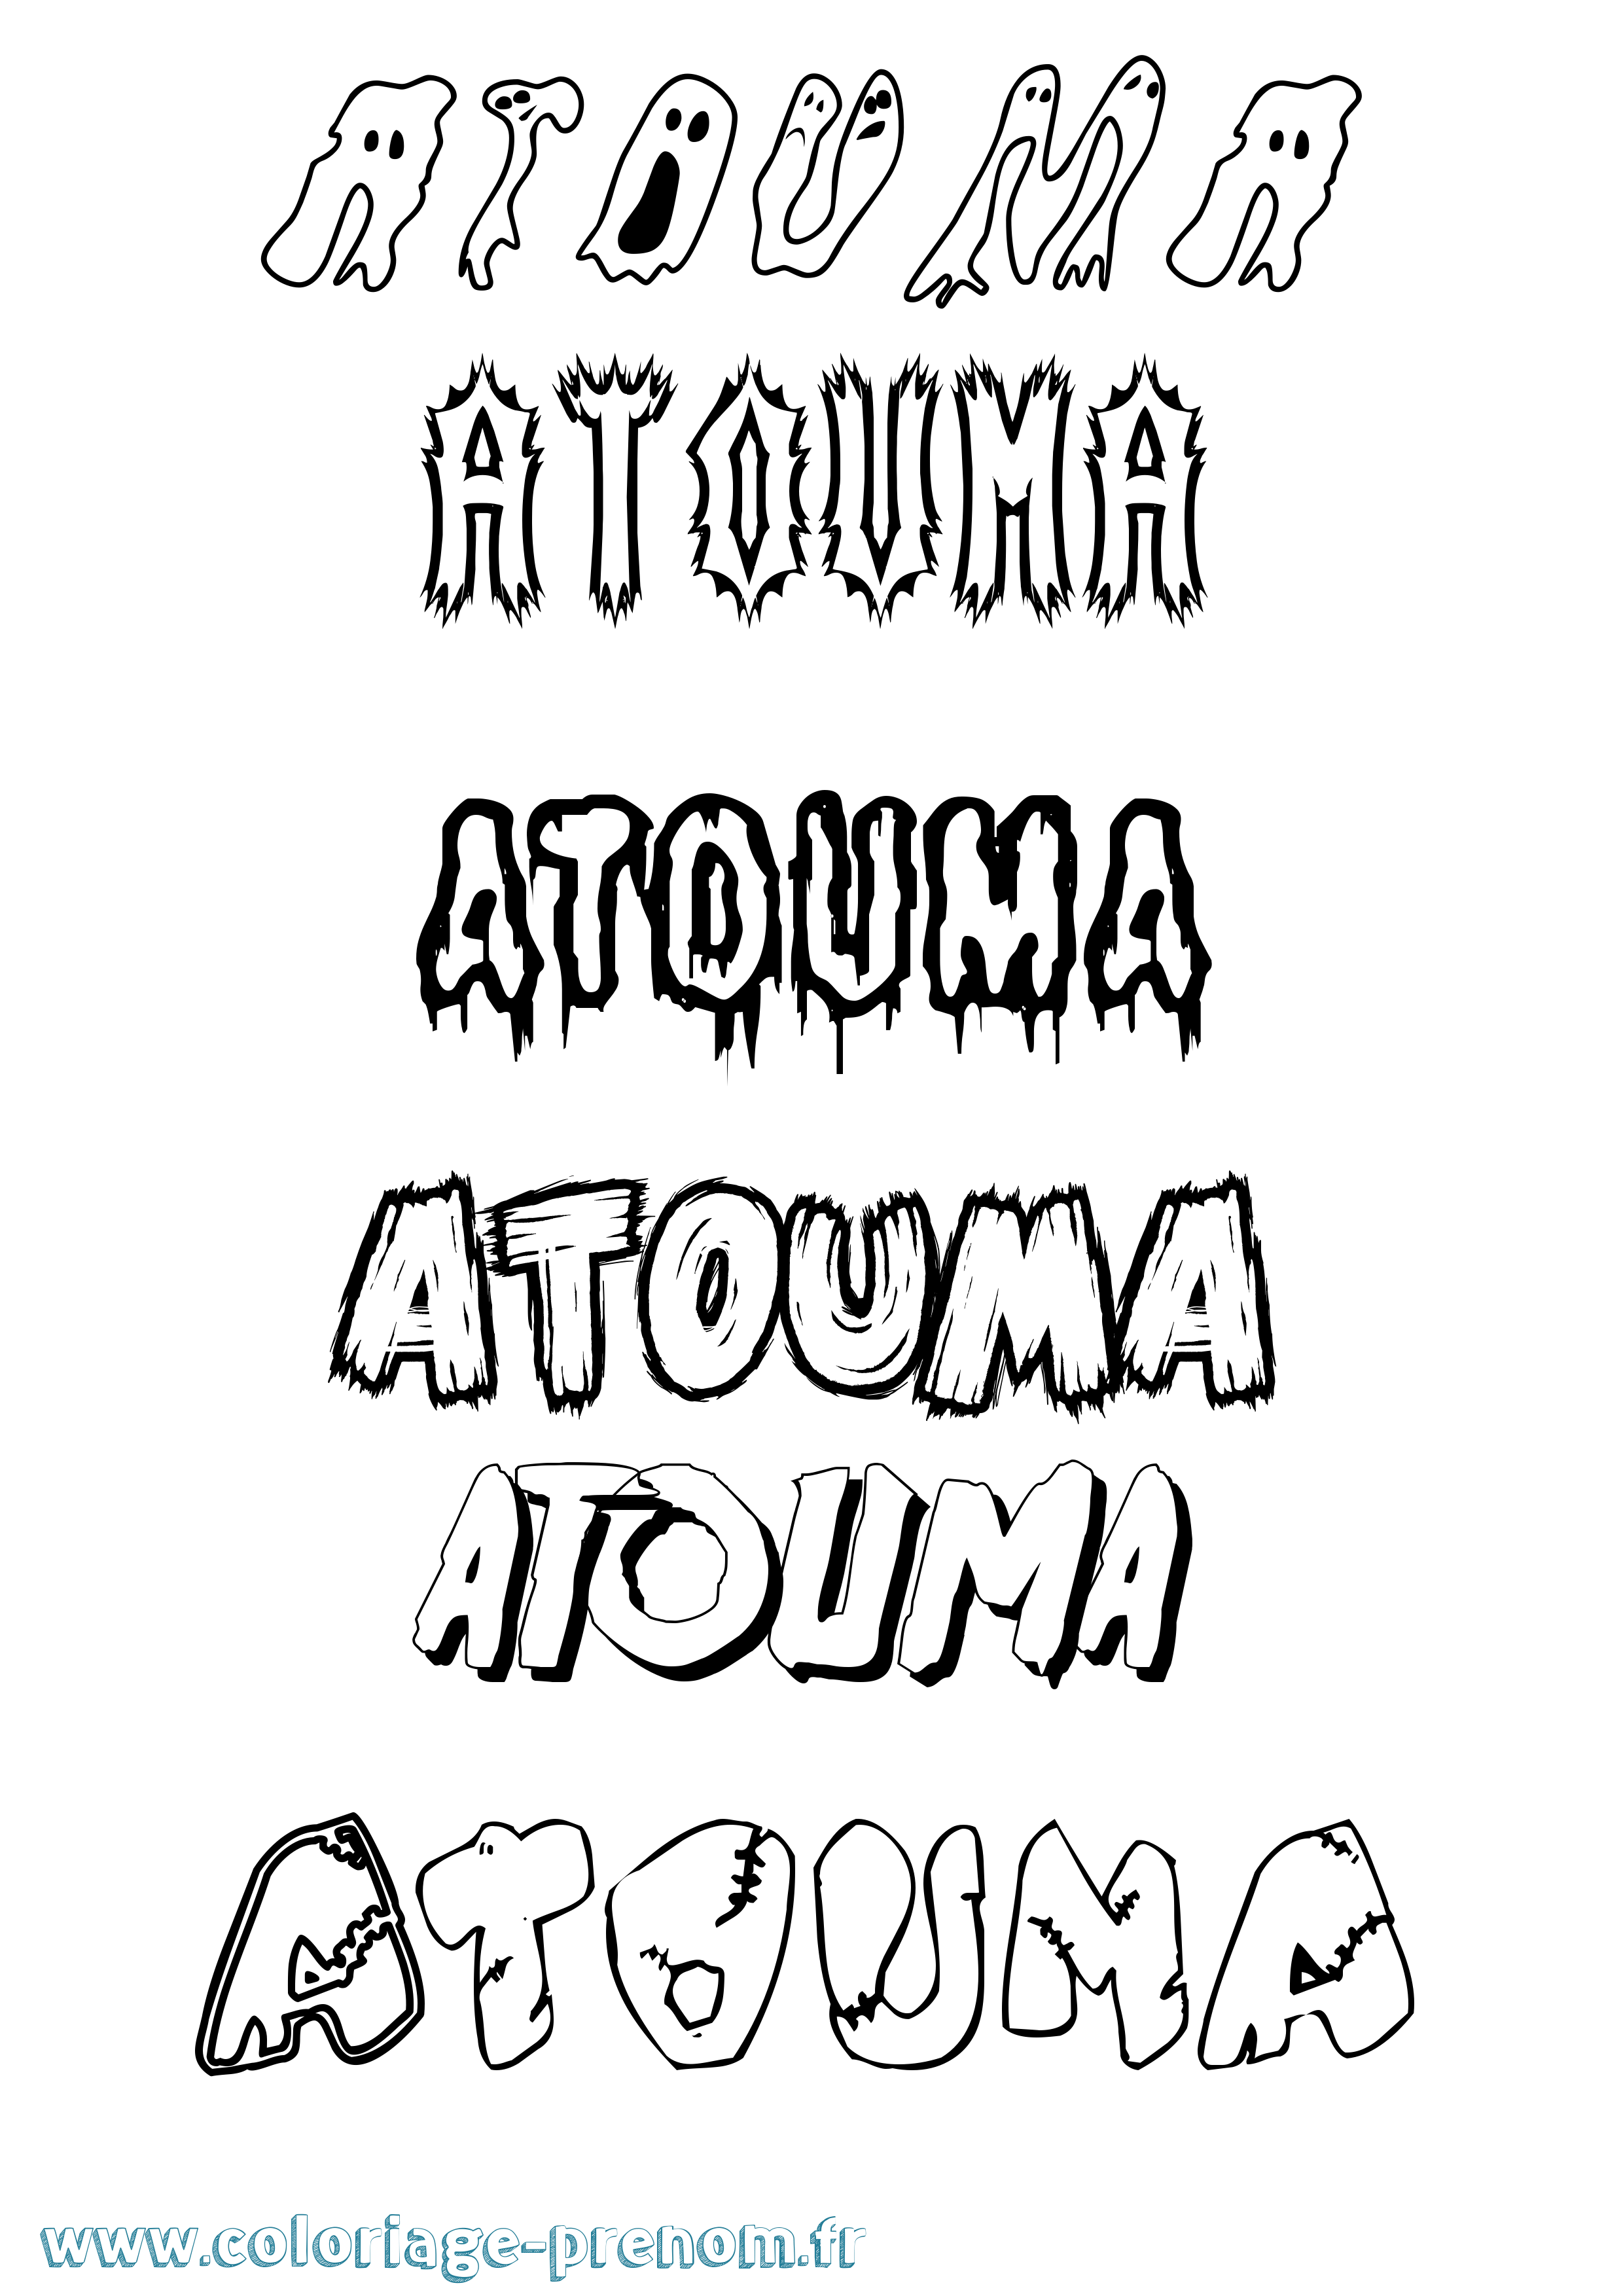 Coloriage prénom Atouma Frisson